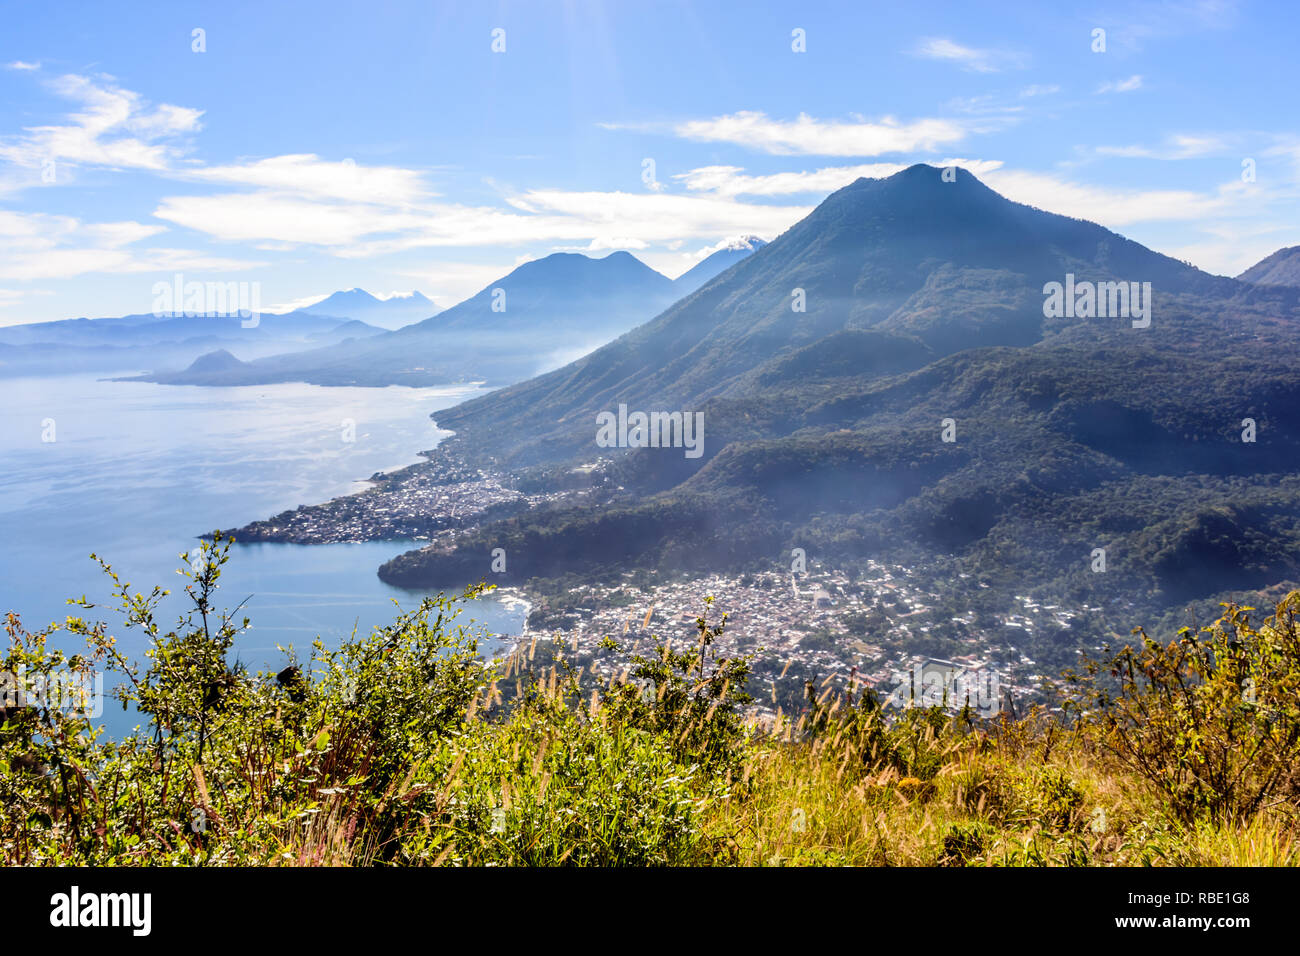 Am frühen Morgen. Blick vom Indischen Nase, San Juan La Laguna der Atitlan See, 5 Vulkane & lakeside Dörfer im guatemaltekischen Hochland. Stockfoto